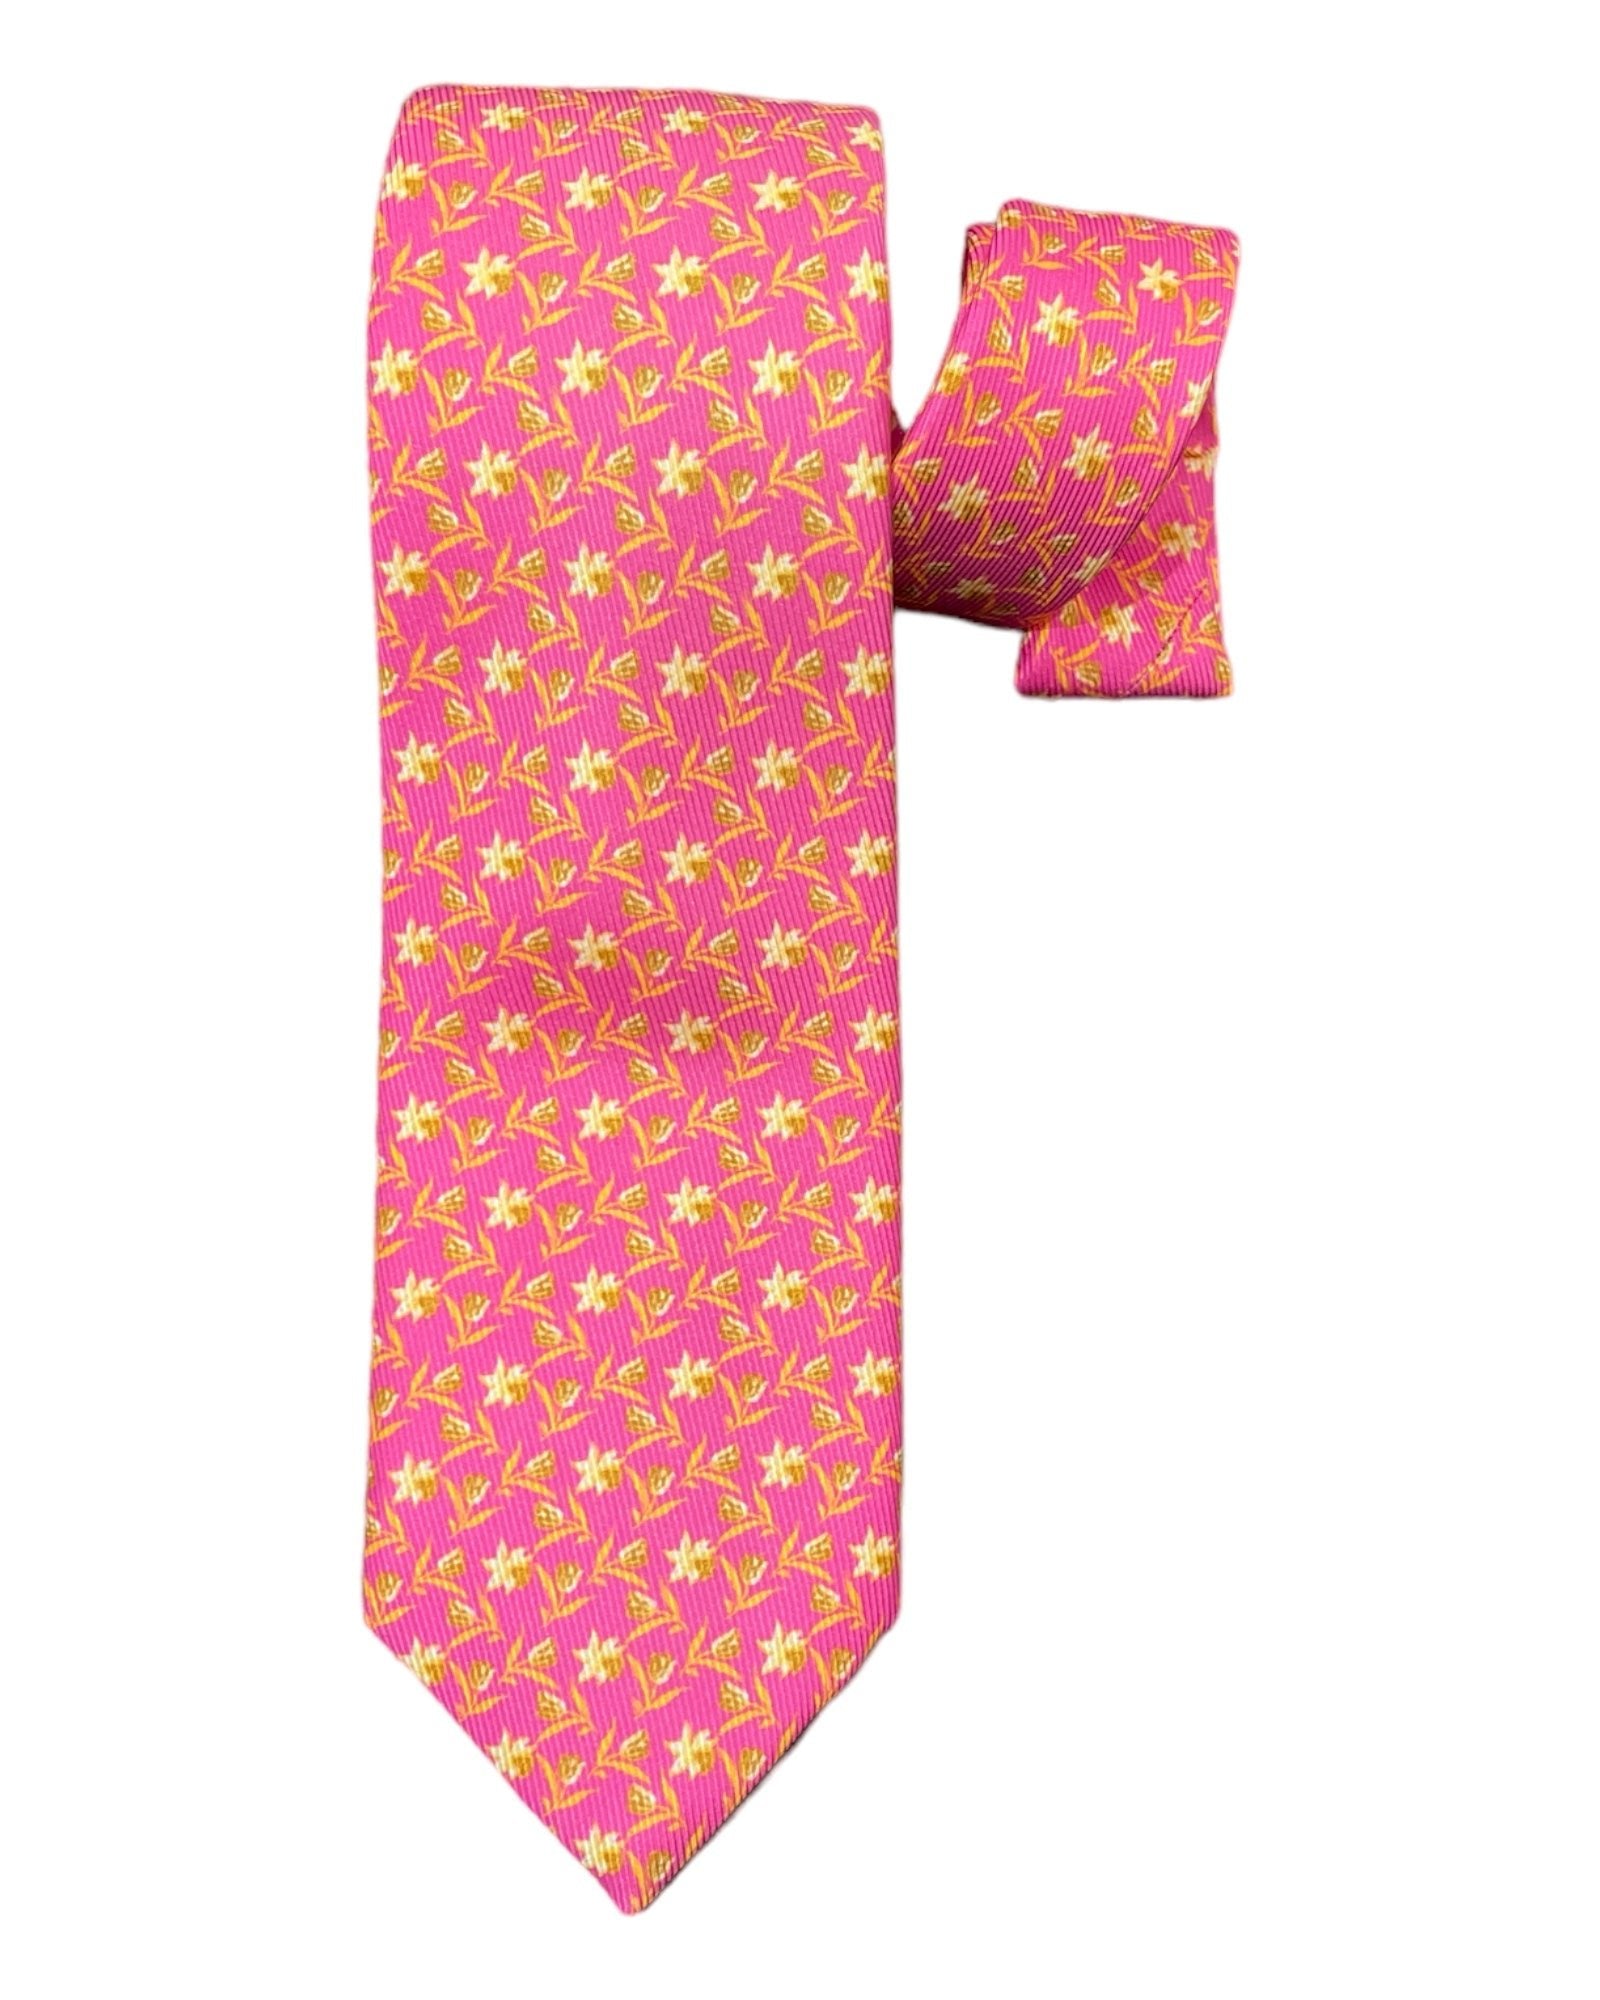 Floral Print 7F Silk Tie - Pink/Beige TIES & BOWTIES